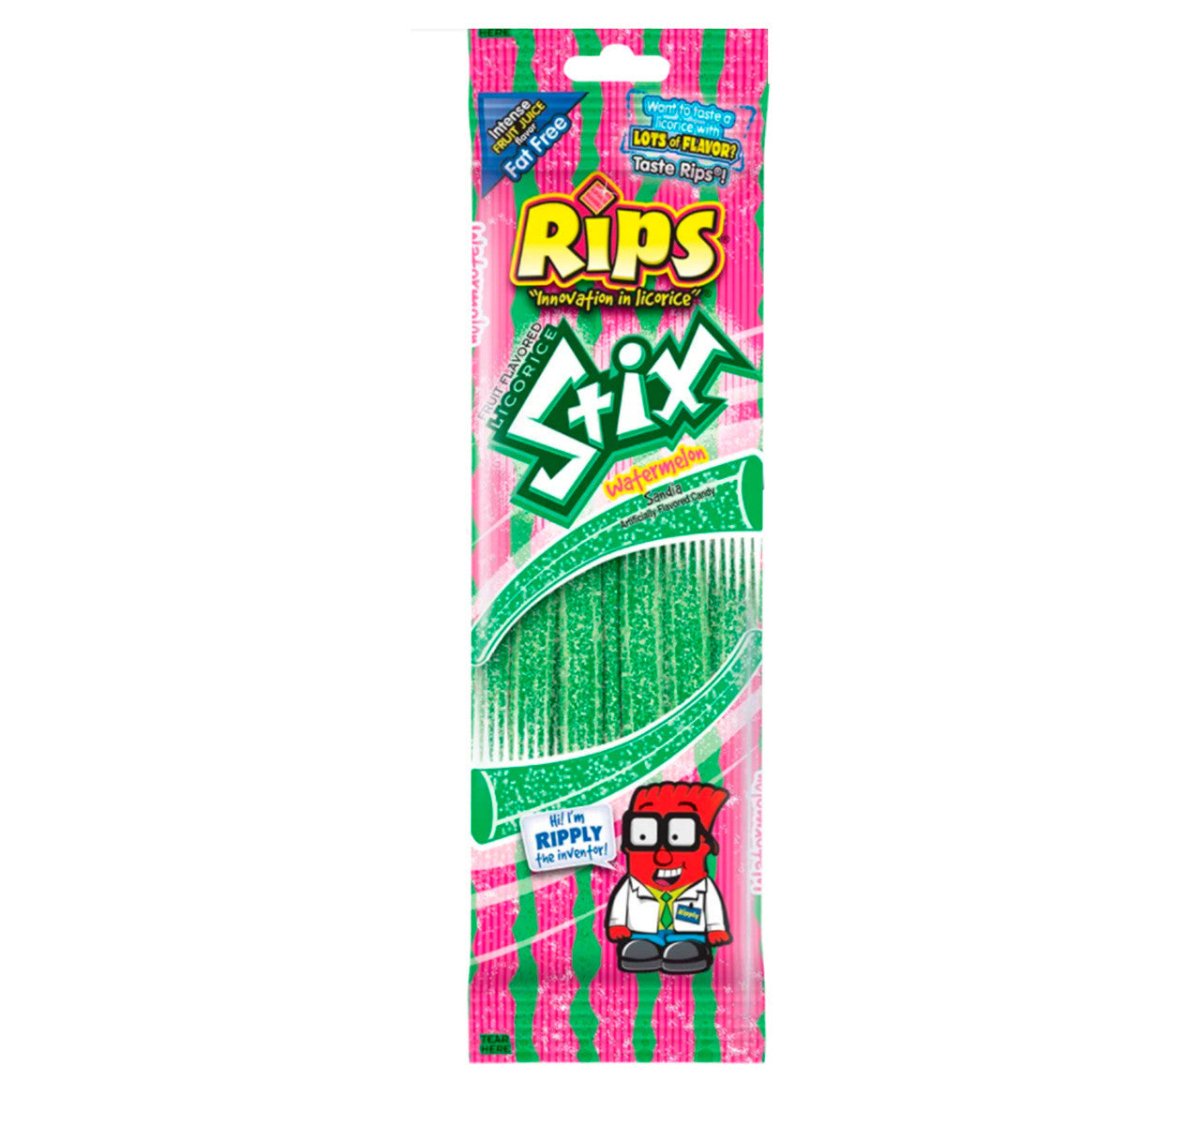 Rips Stix Watermelon 50g - Candy Mail UK